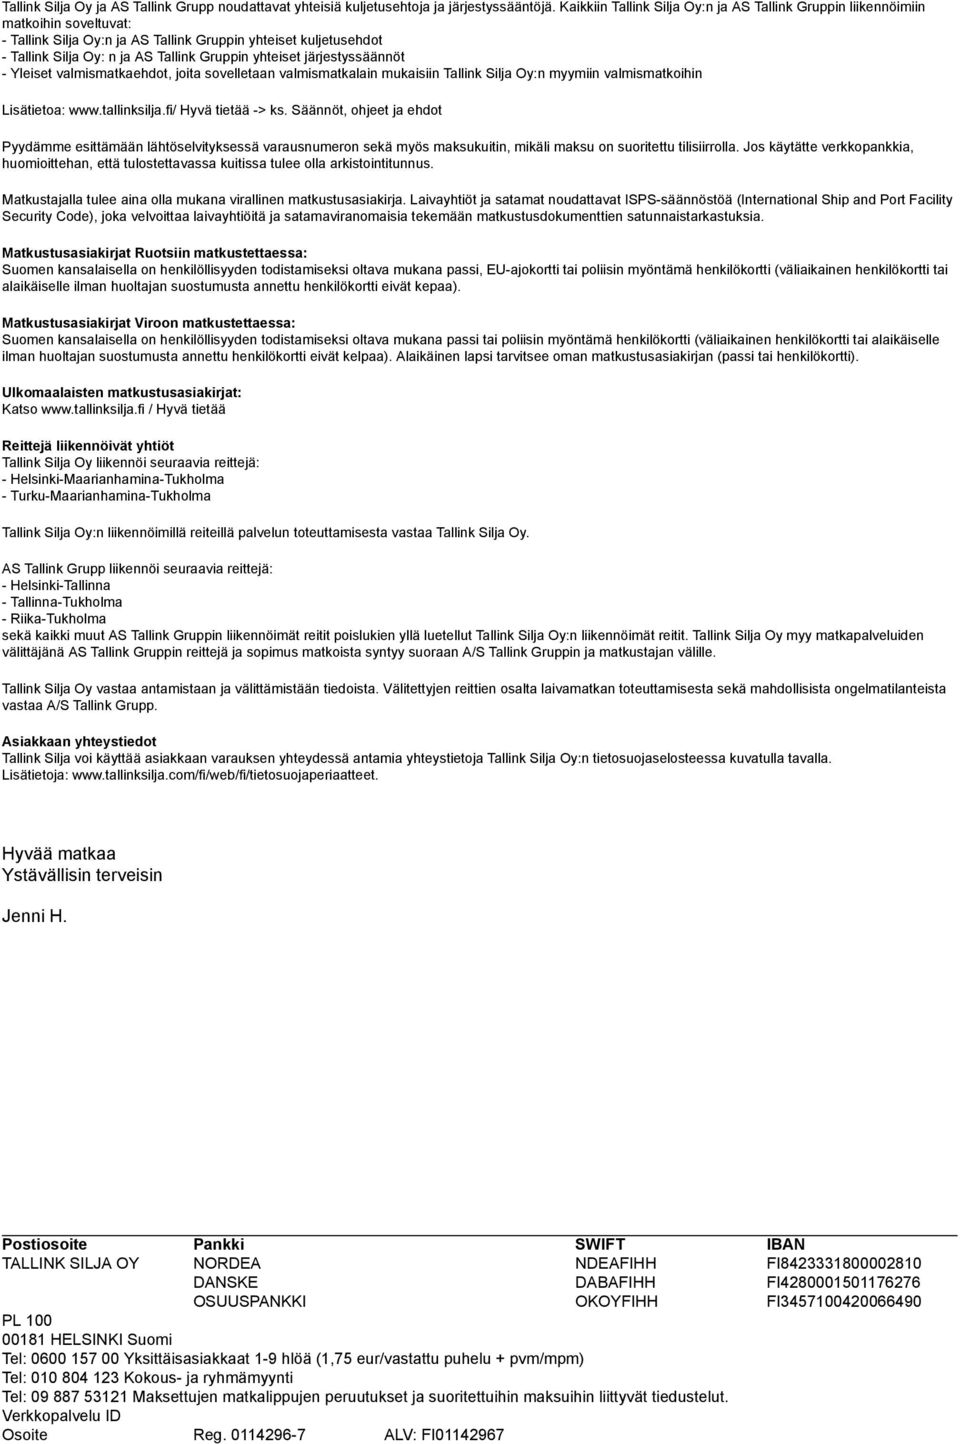 yhteiset järjestyssäännöt - Yleiset valmismatkaehdot, joita sovelletaan valmismatkalain mukaisiin Tallink Silja Oy:n myymiin valmismatkoihin Lisätietoa: www.tallinksilja.fi/ Hyvä tietää -> ks.